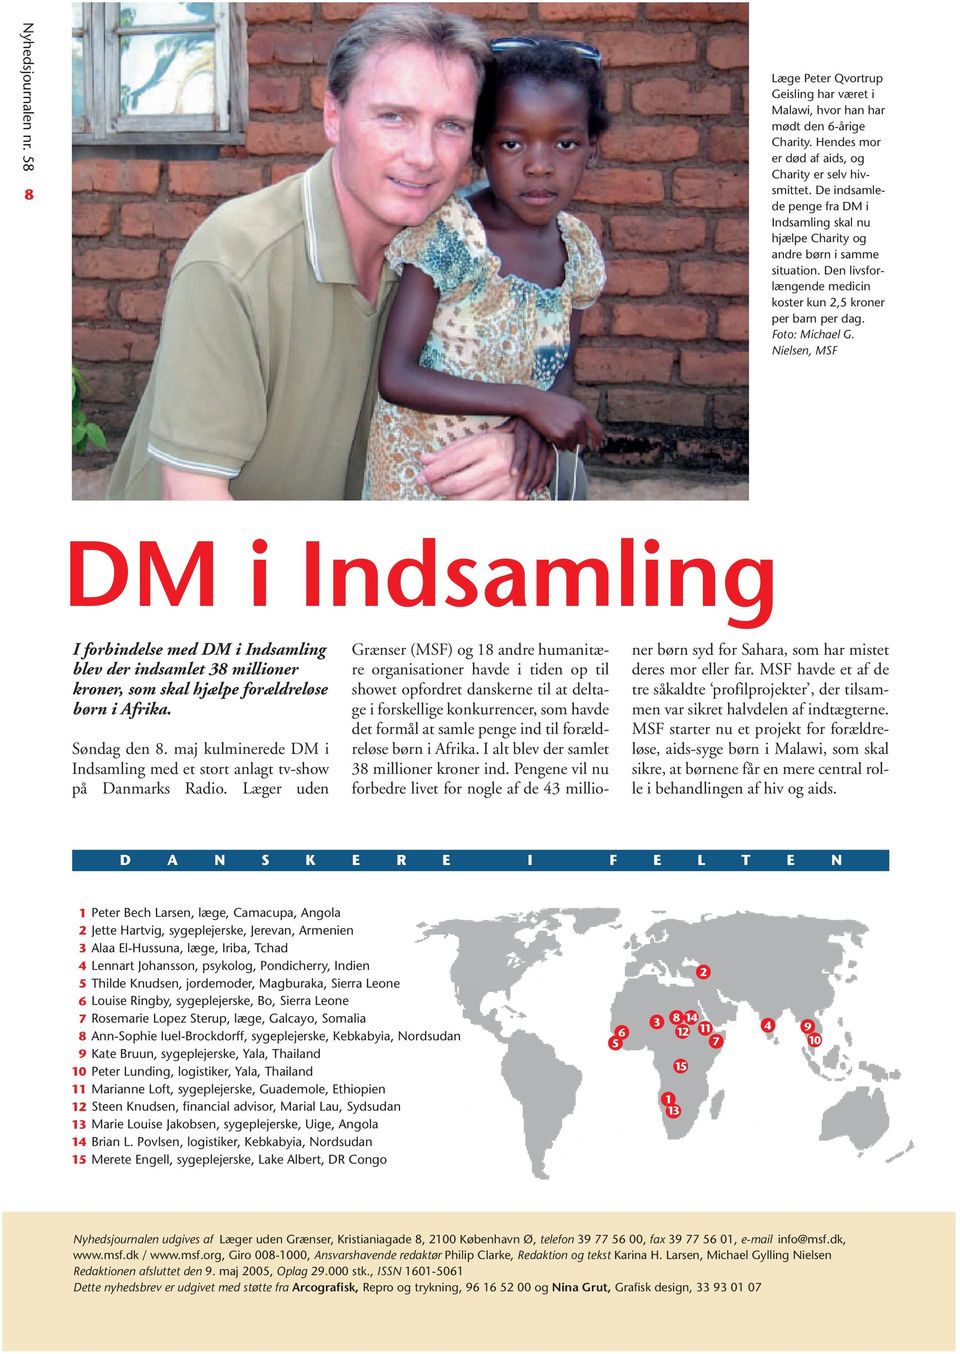 Nielsen, MSF DM i Indsamling I forbindelse med DM i Indsamling blev der indsamlet 38 millioner kroner, som skal hjælpe forældreløse børn i Afrika. Søndag den 8.